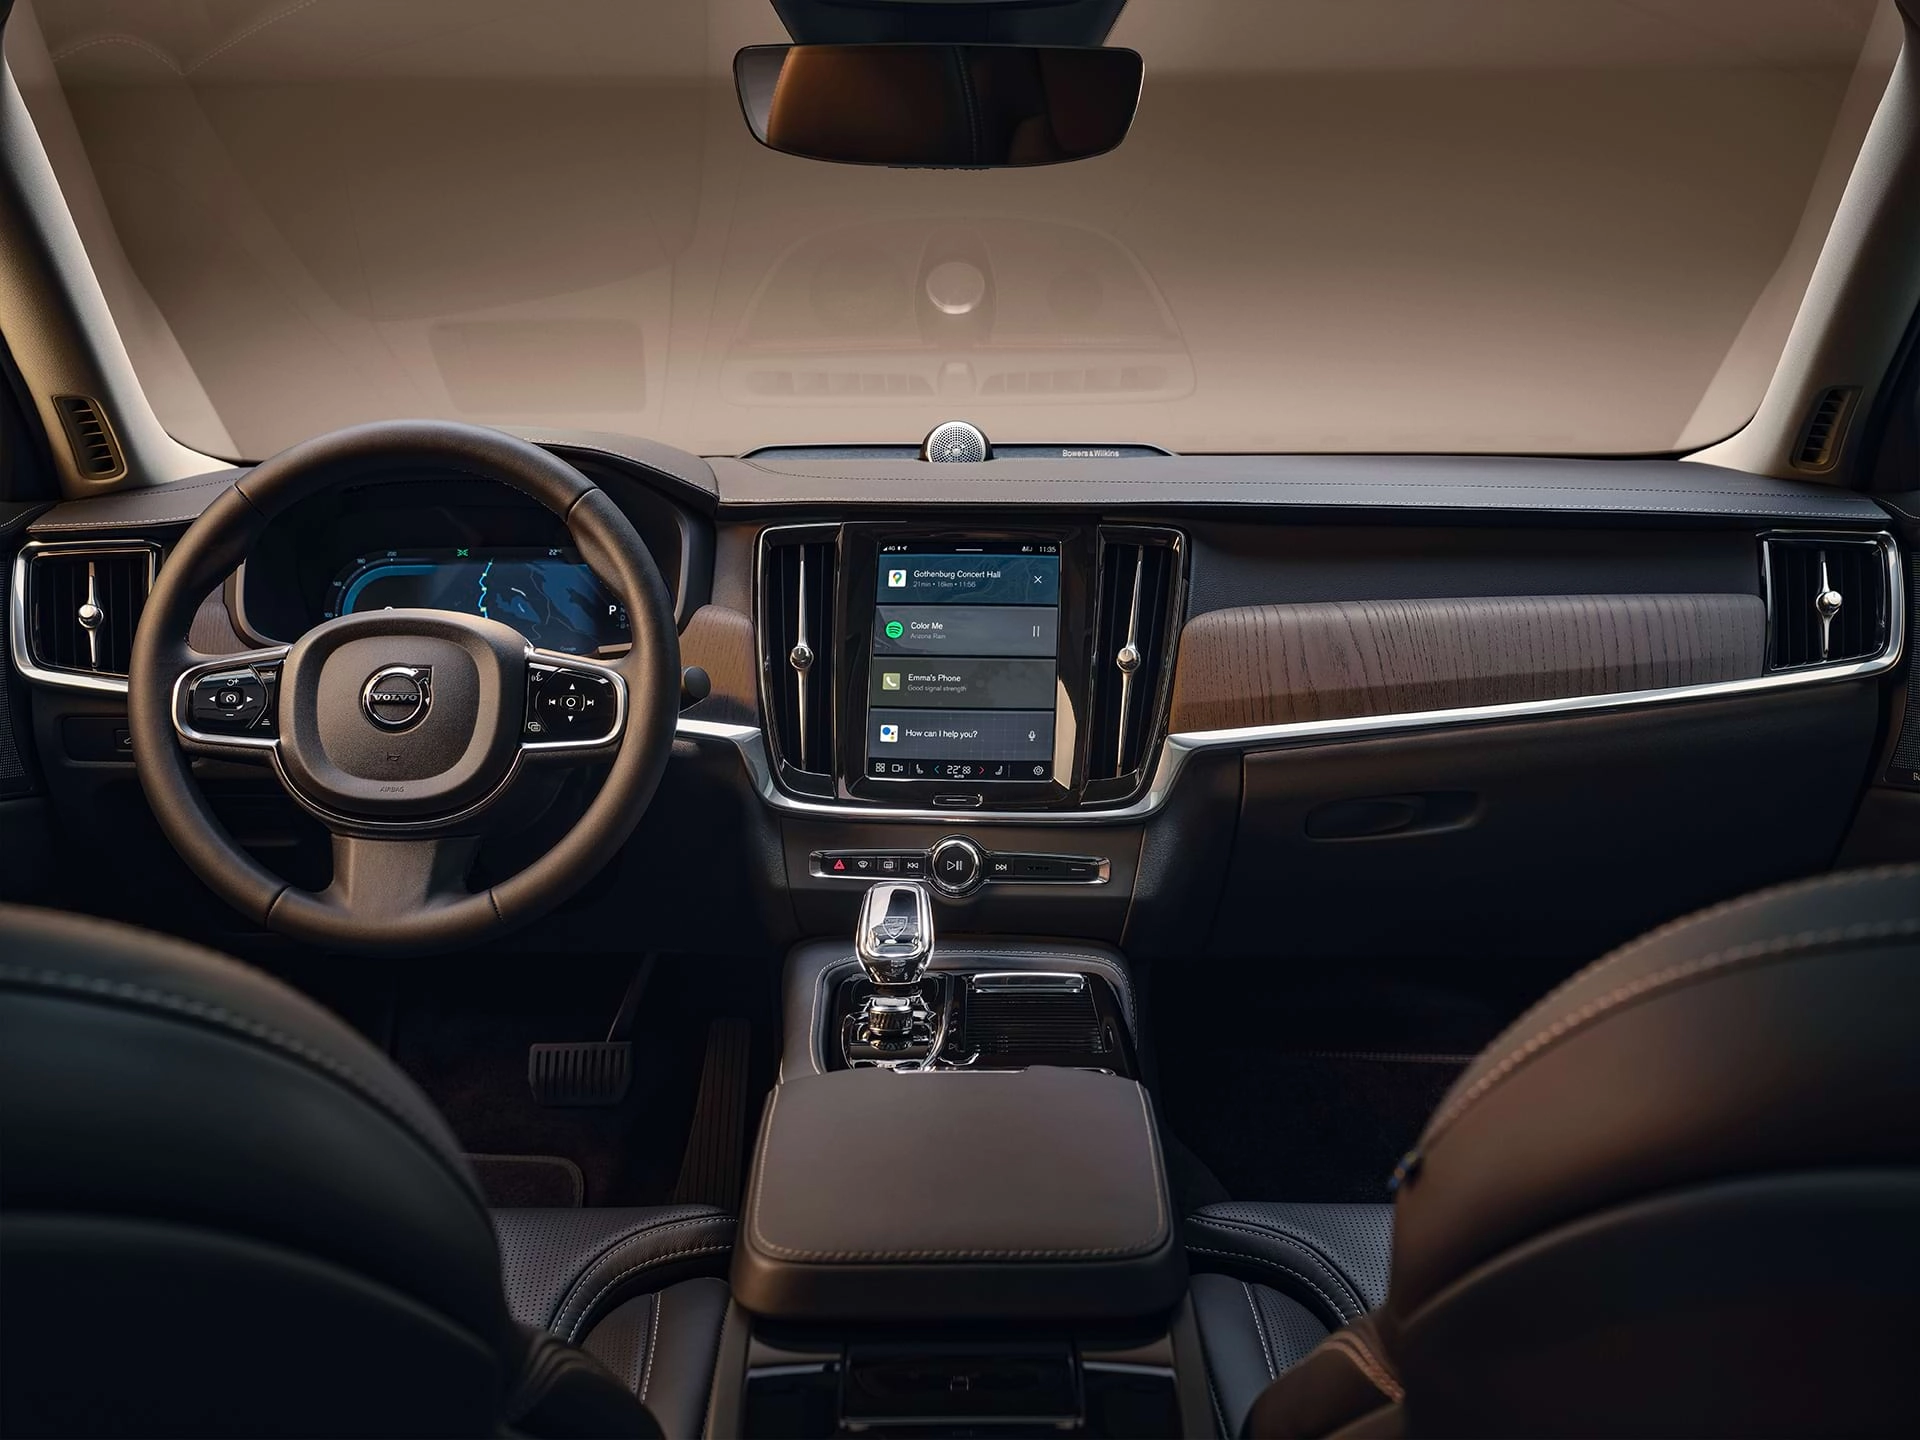 Kontrolna tabla, centralni ekran, mjenjač, ekran za vozača i upravljač Volvo limuzine.